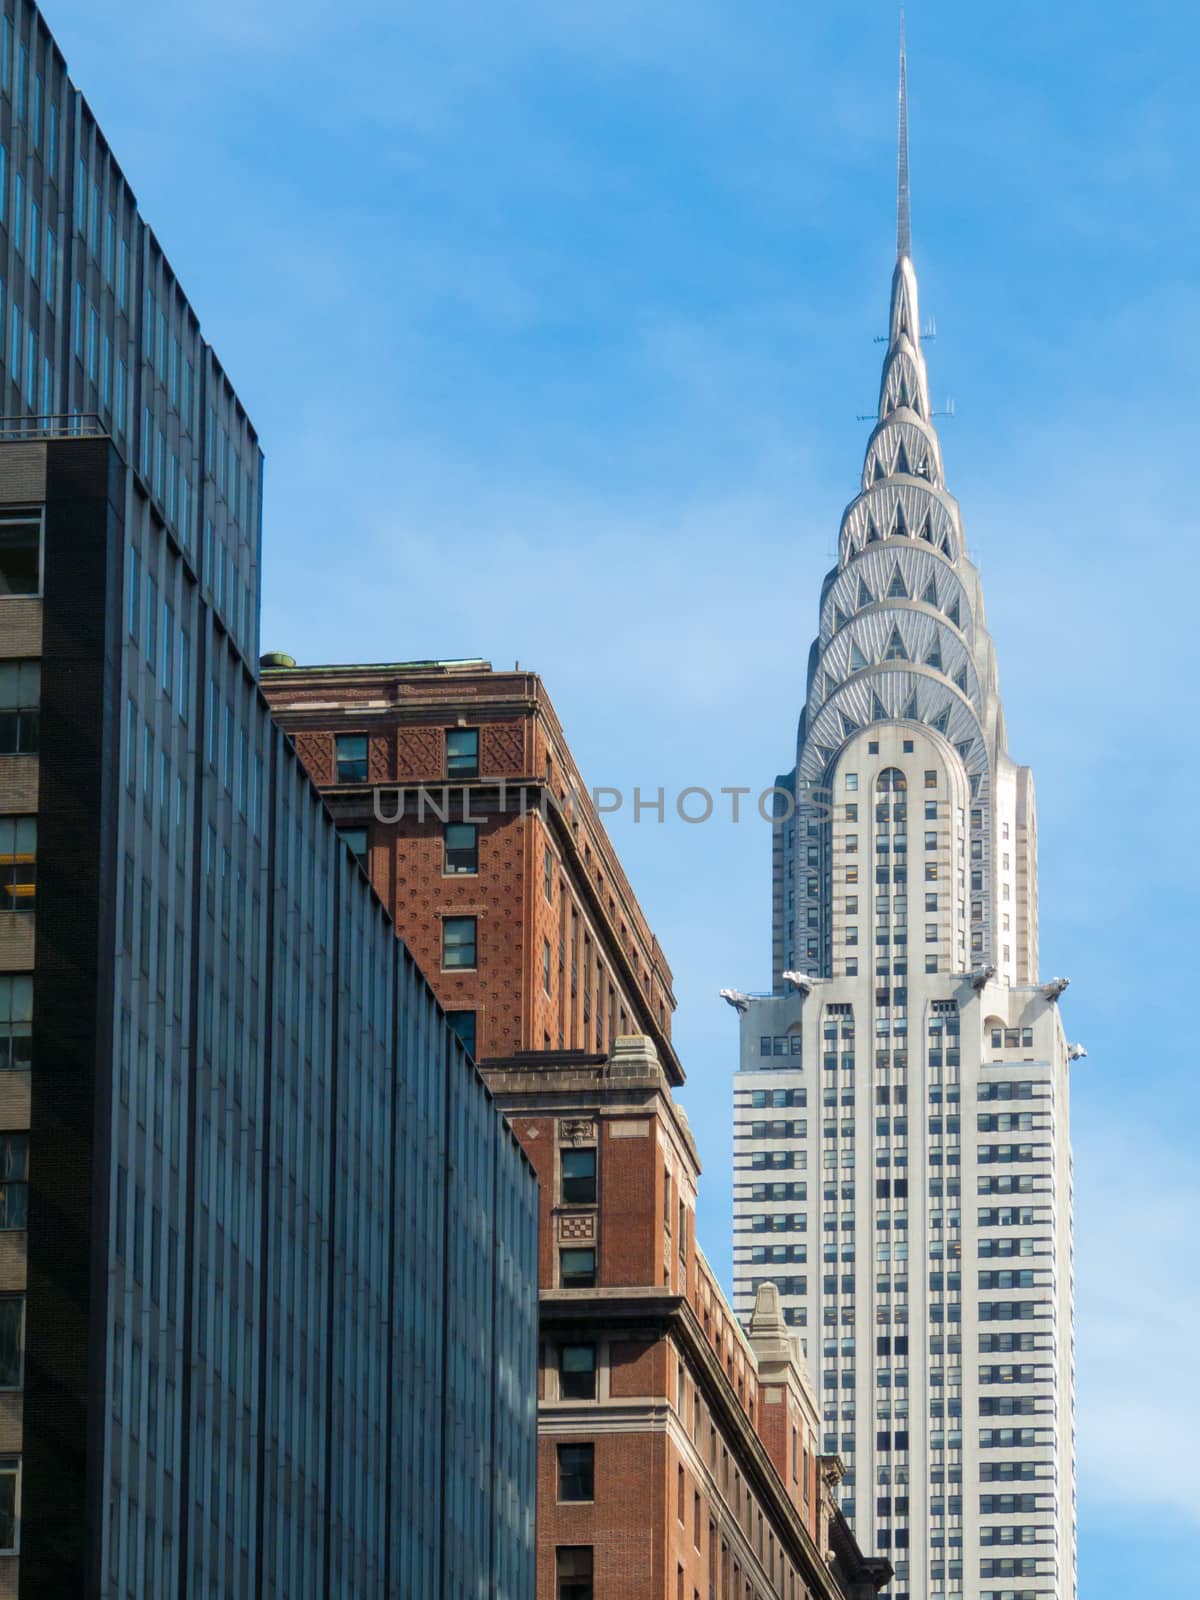 Chrysler Building by Jule_Berlin